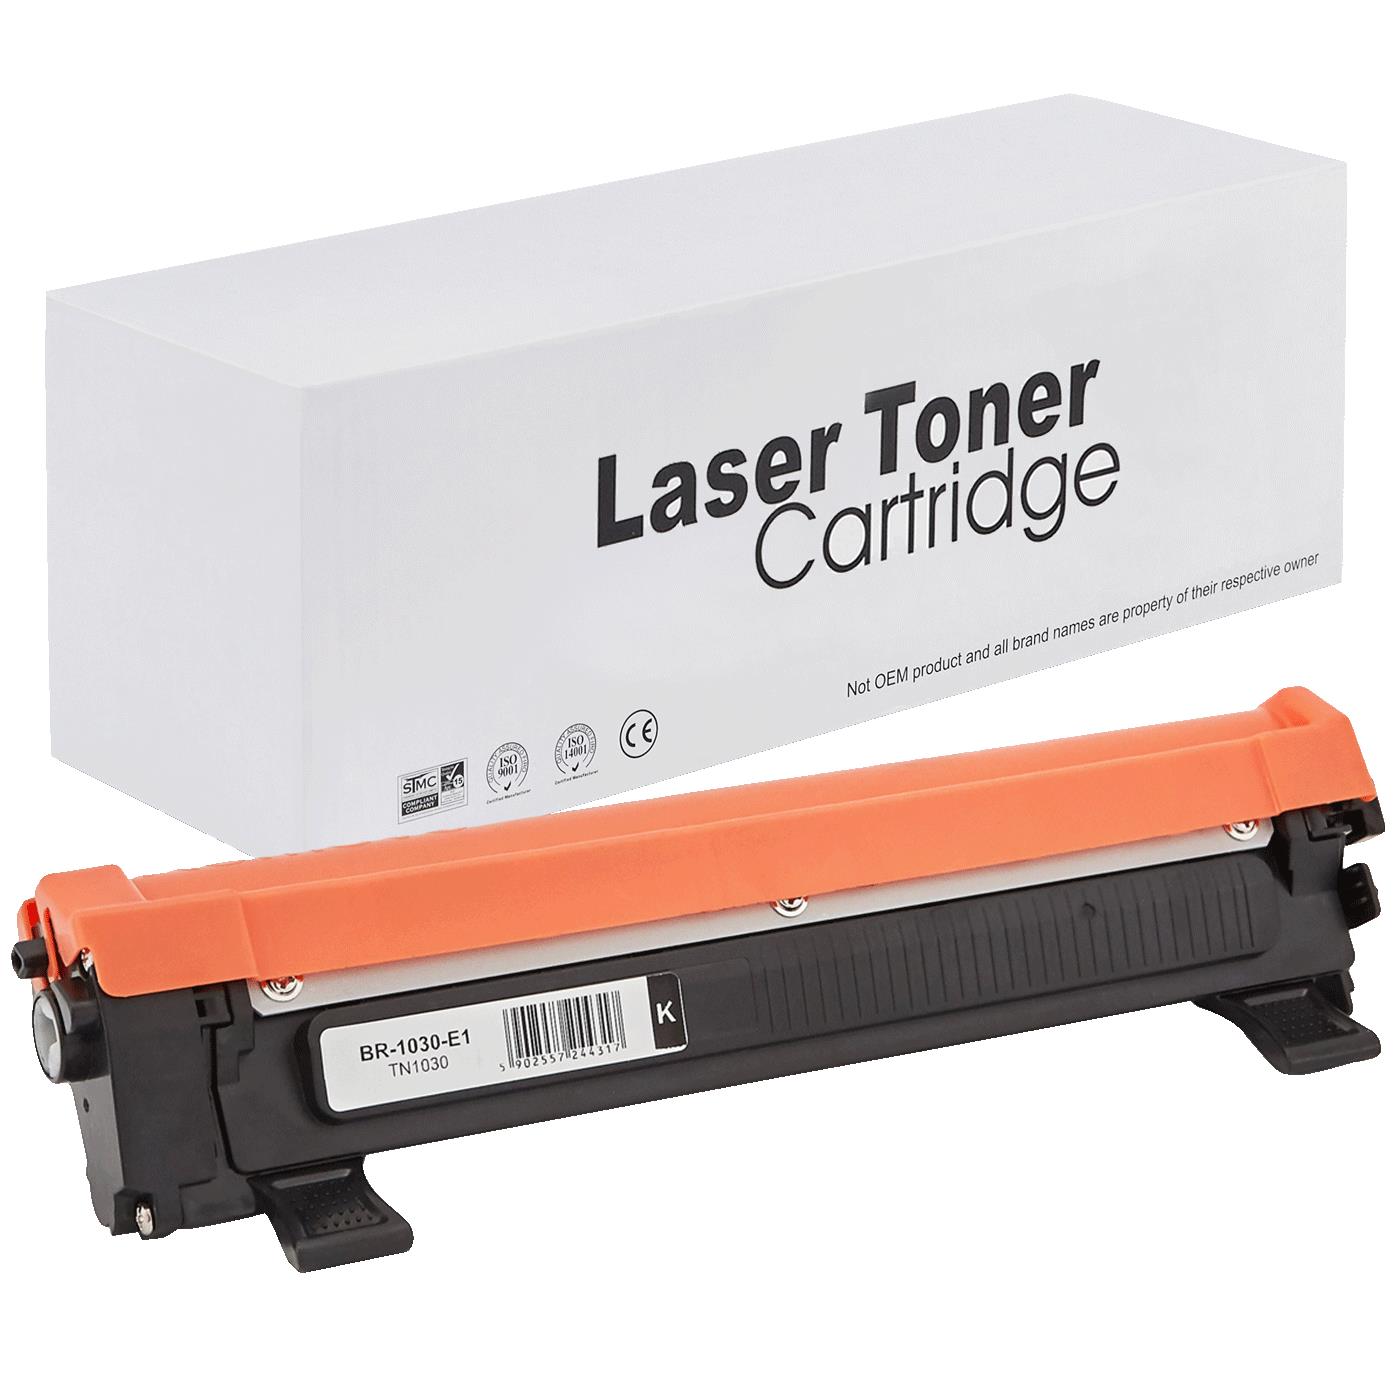 съвместима тонер касета за принтери и печатащи устройства на Brother 1212 Toner BR-1030 | TN1030 / TN1050 / TN-1030. Ниски цени, прецизно изпълнение, високо качество.